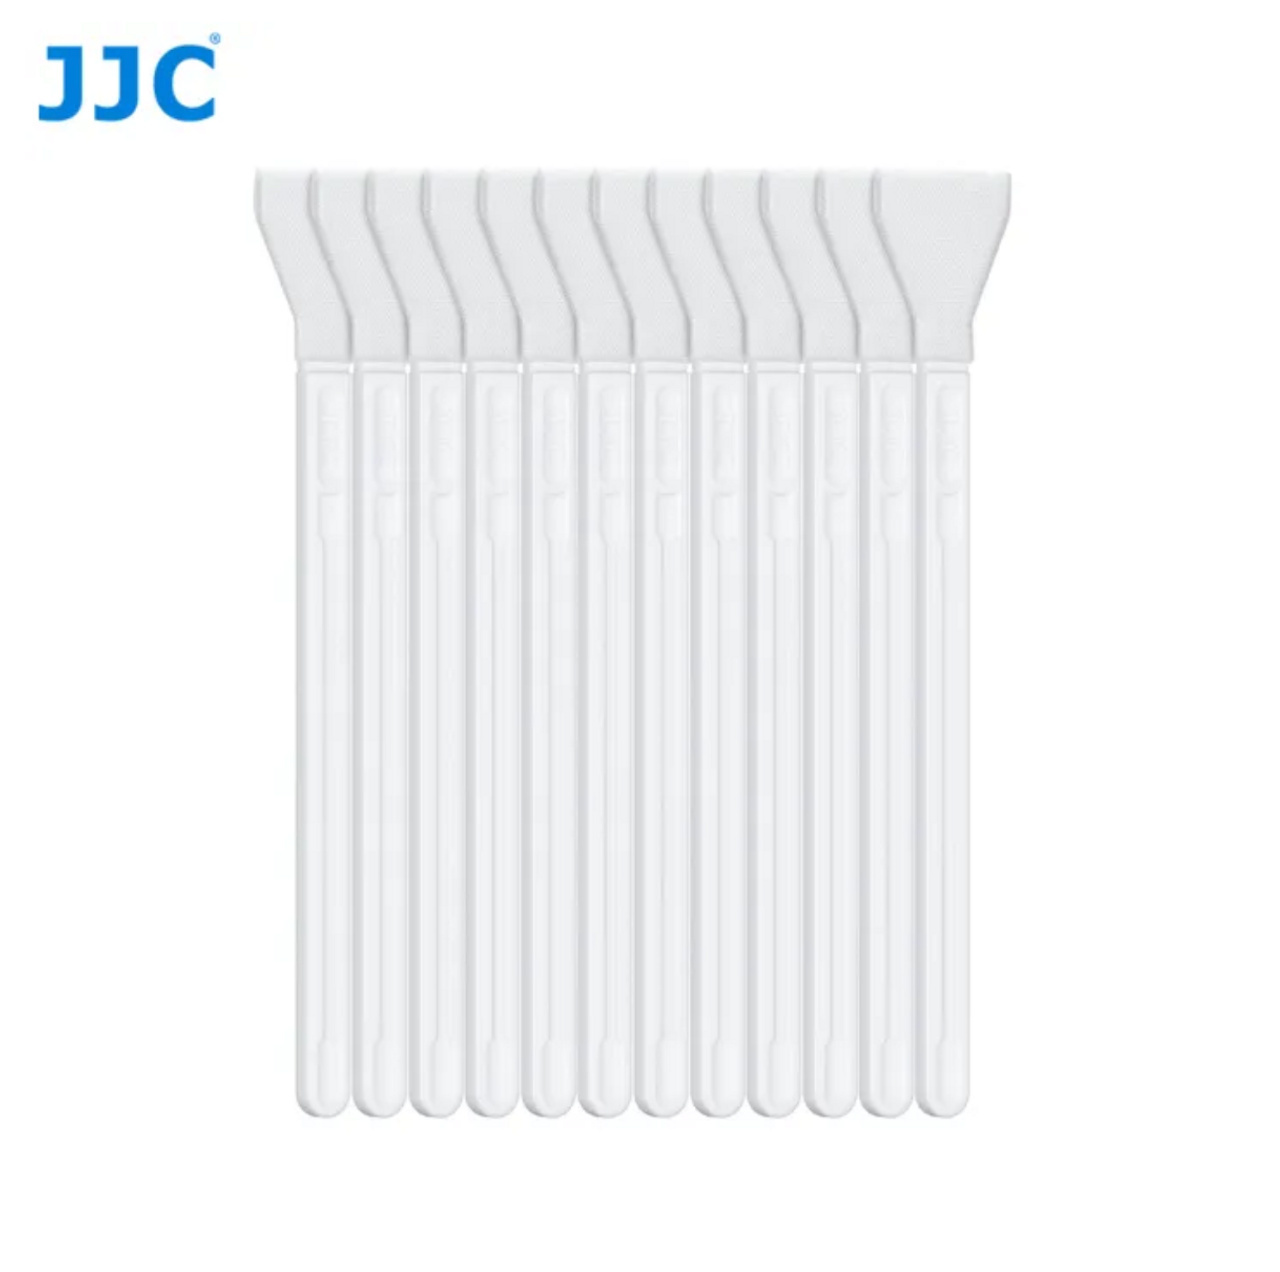 JJC CL-A16K2 APS-C Frame Sensor Cleaning Swabs (12 Pack)